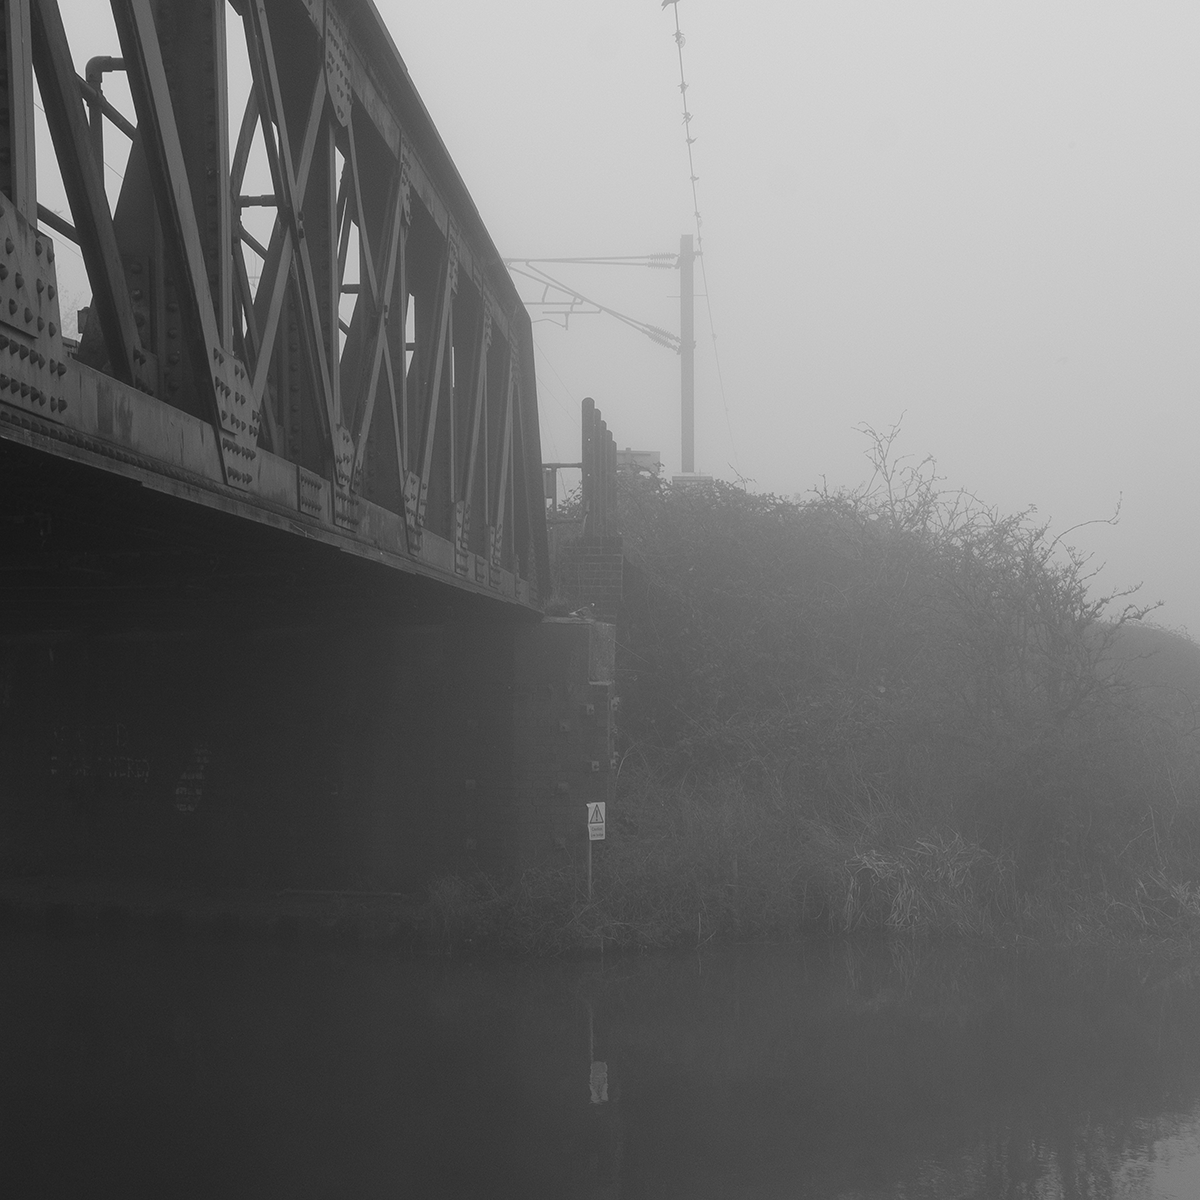 Railway Bridge in the Mist link image